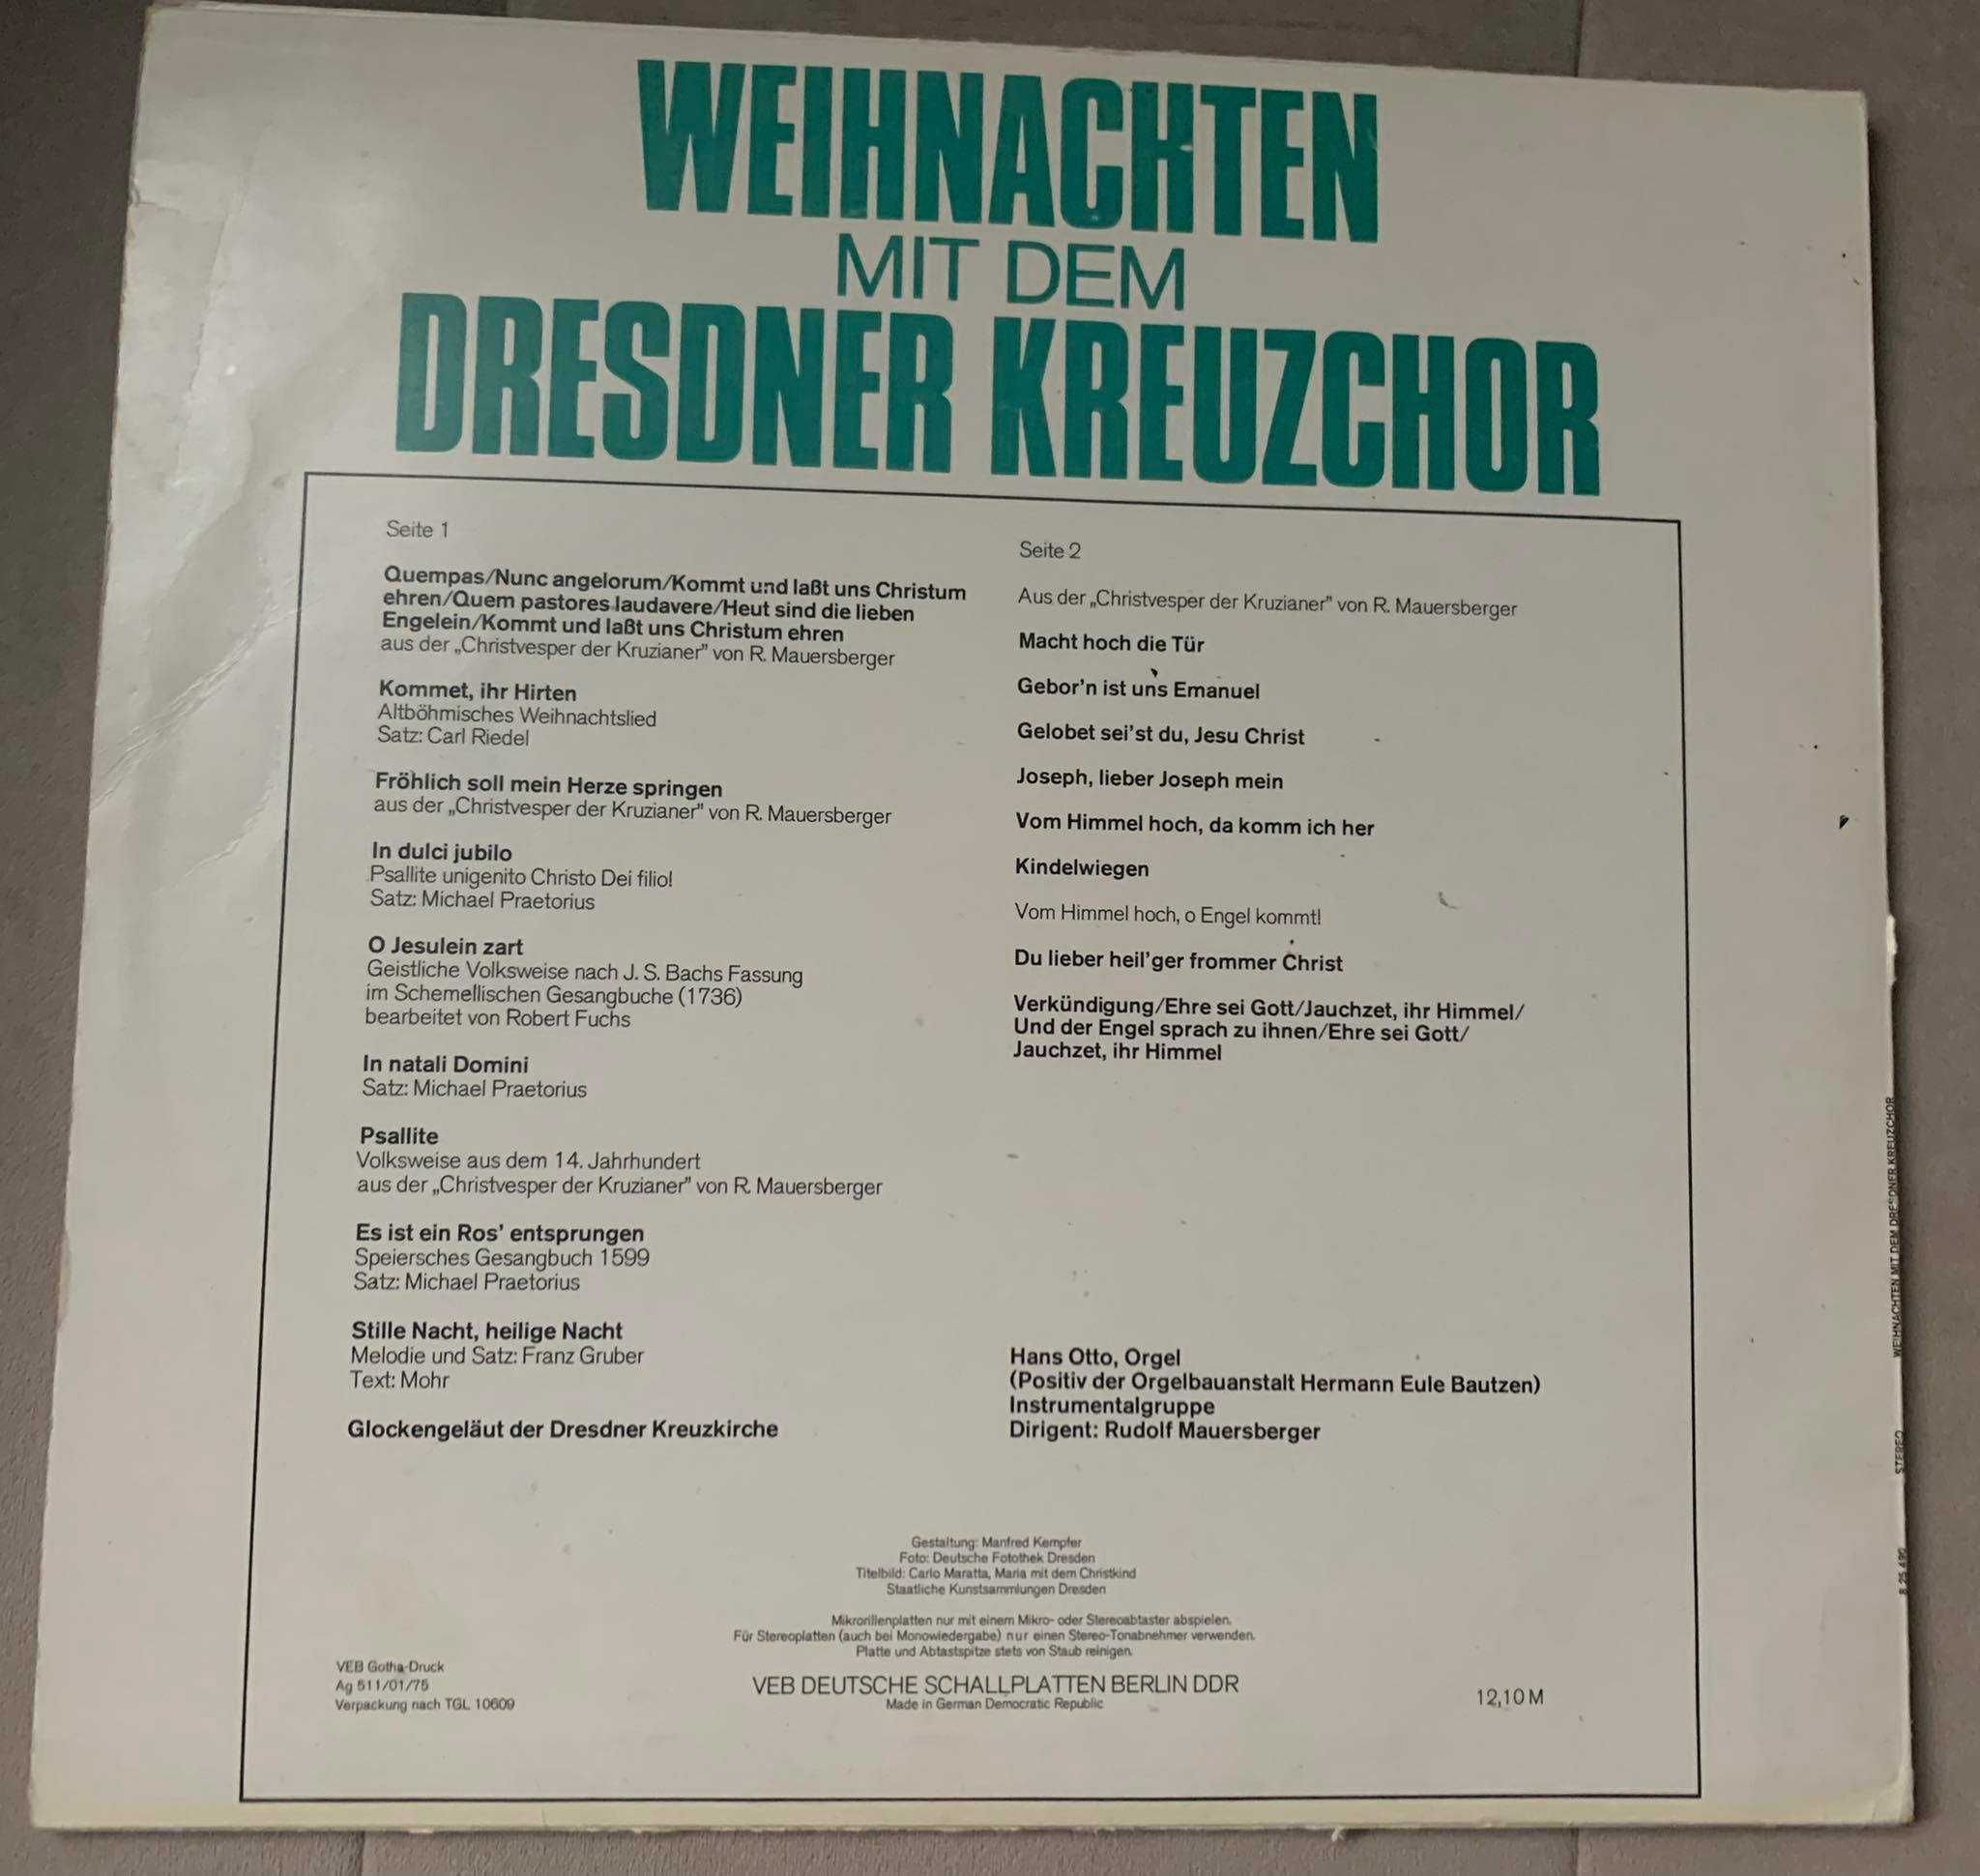 Weihnachten Mit Dem Dresdner Kreuzchor - Winyl - stan VG!